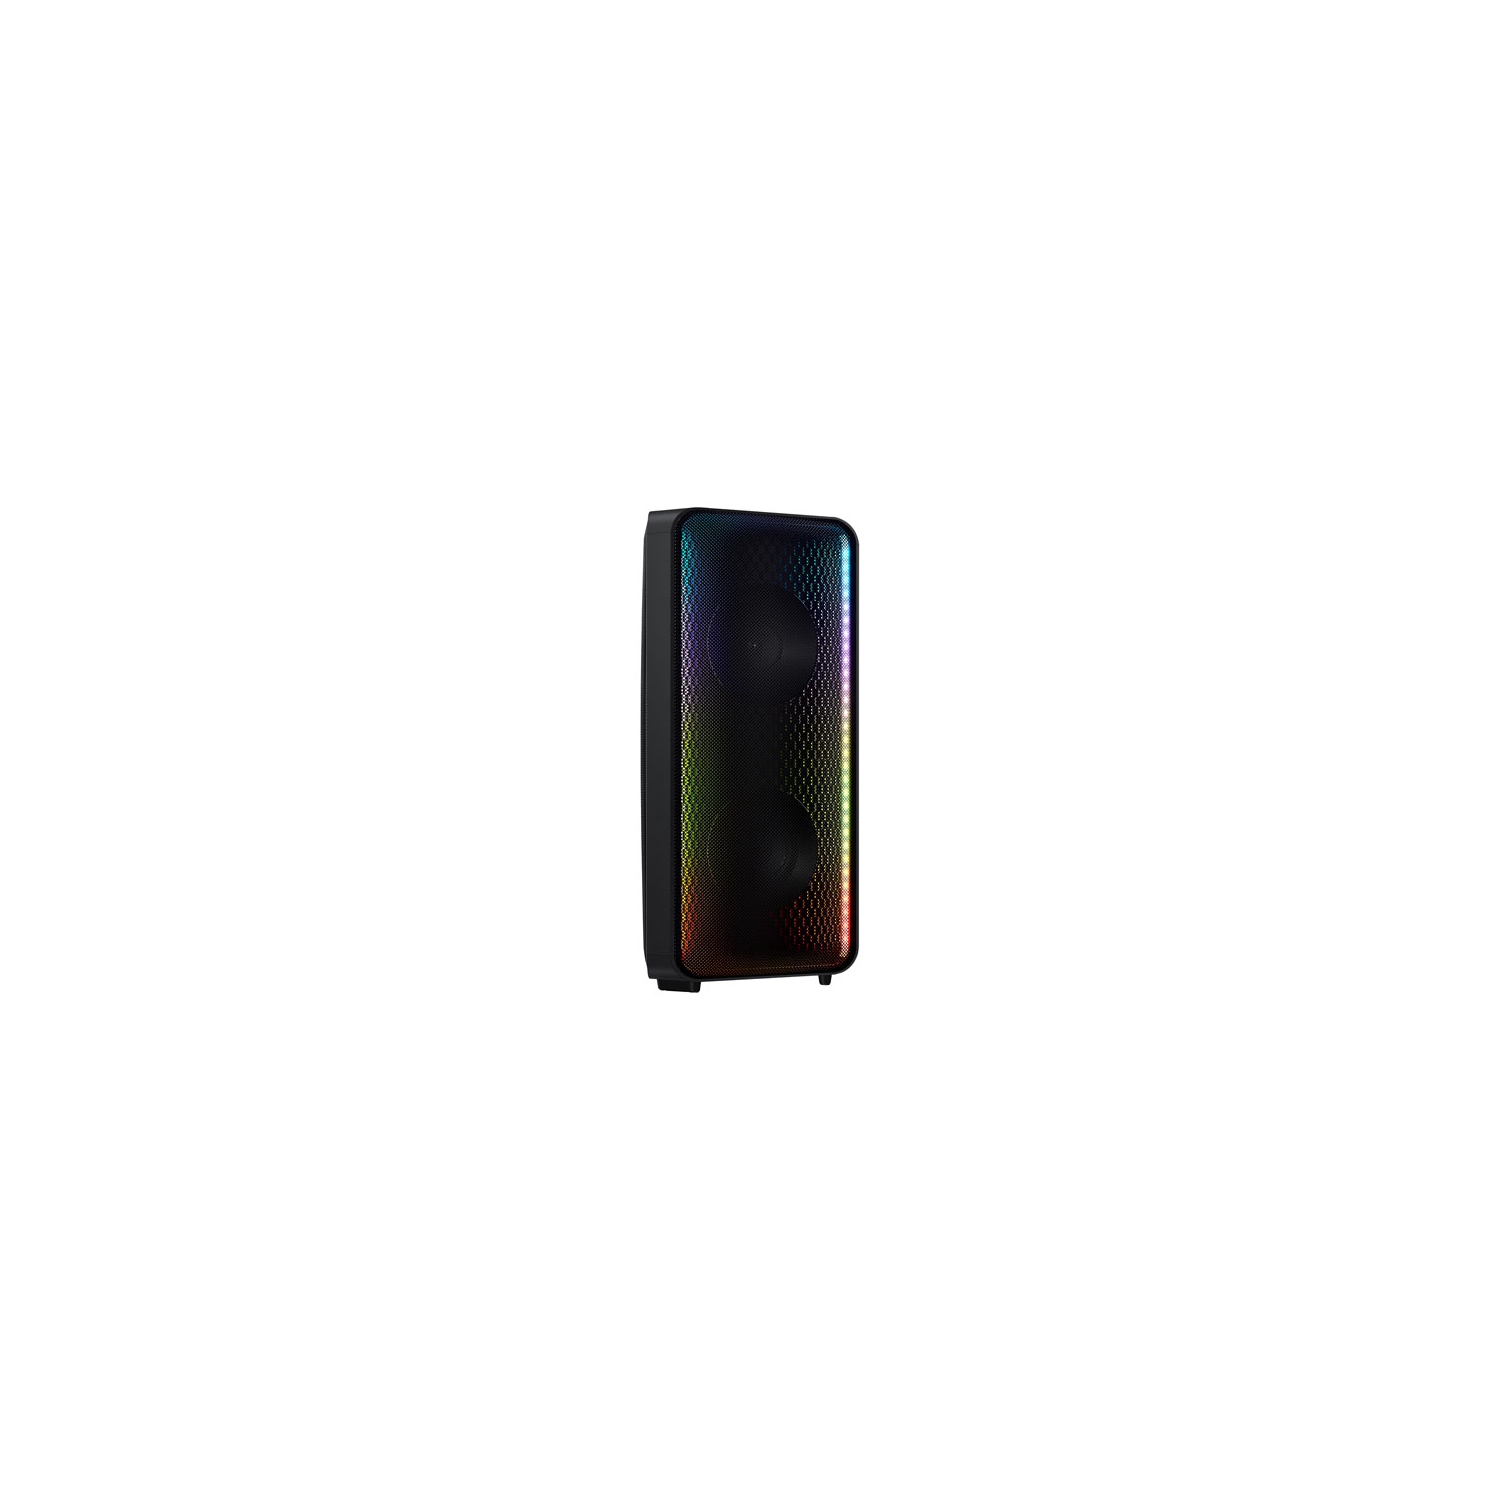 Samsung MXST40B 160-Watt Party Speaker - Single - Black - OPEN BOX 10/10 with 1 Year Warranty